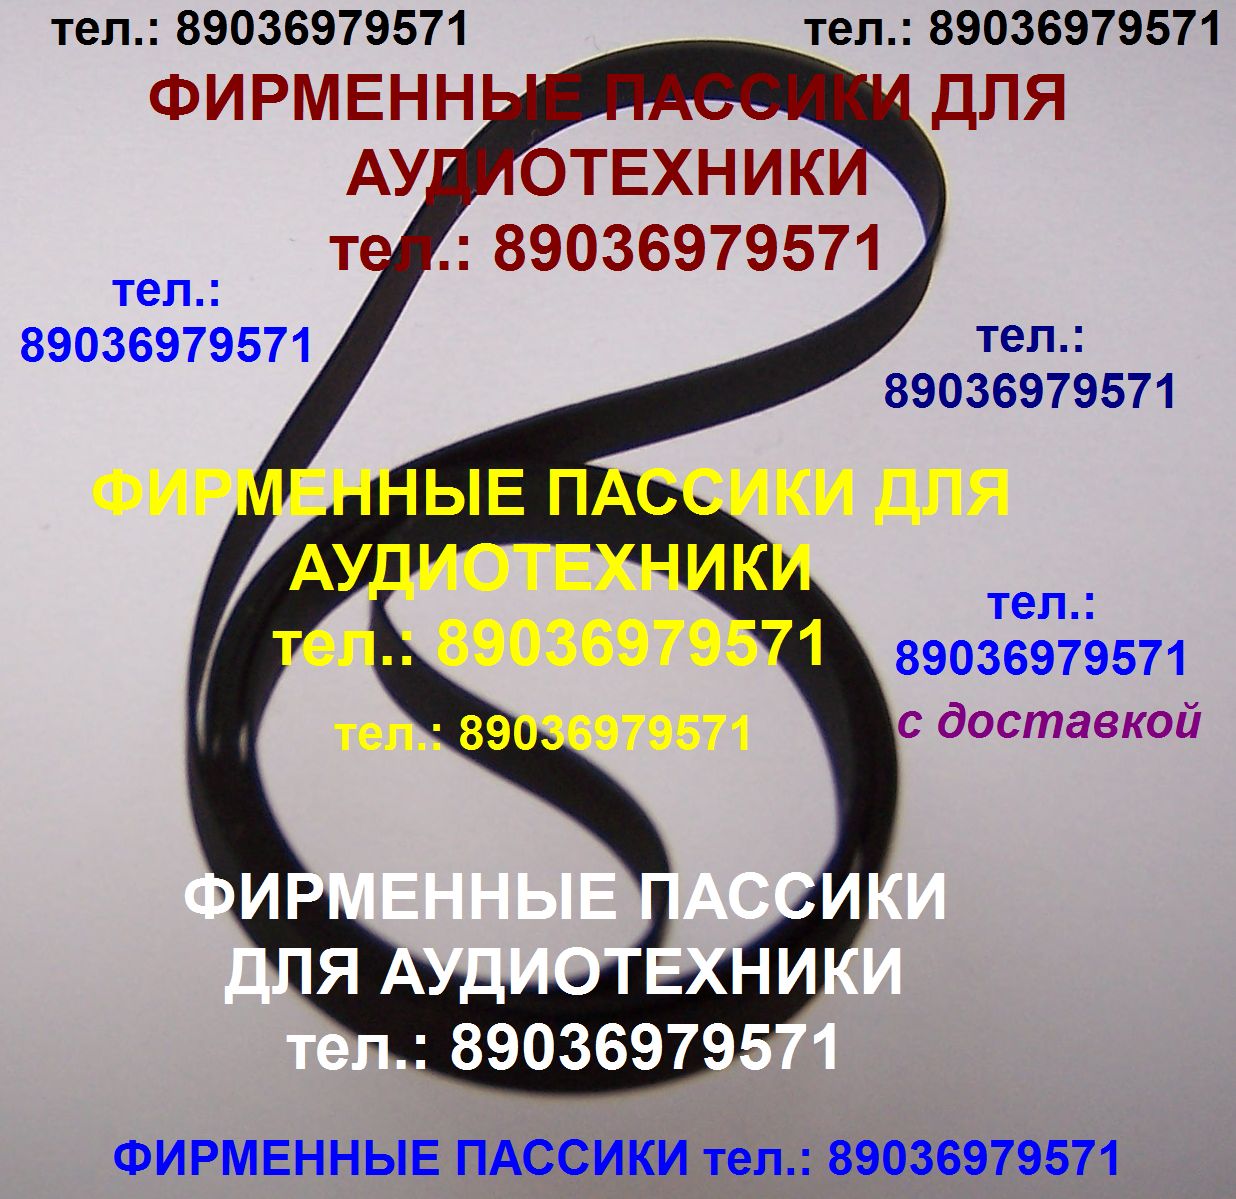 Новый фирменный пассик для TECHNICS SL-BD22 (ремень пасик для TECHNICS SL BD 22). Отправка пассиков для радиотехники. Тел.: 89036979571. Новый японский пассик на Technics SL-BD22 (ремень пасик для Technics SLBD22). Тел.: 89036979571. Фирменные пассики для в городе Москва, фото 1, стоимость: 1 руб.